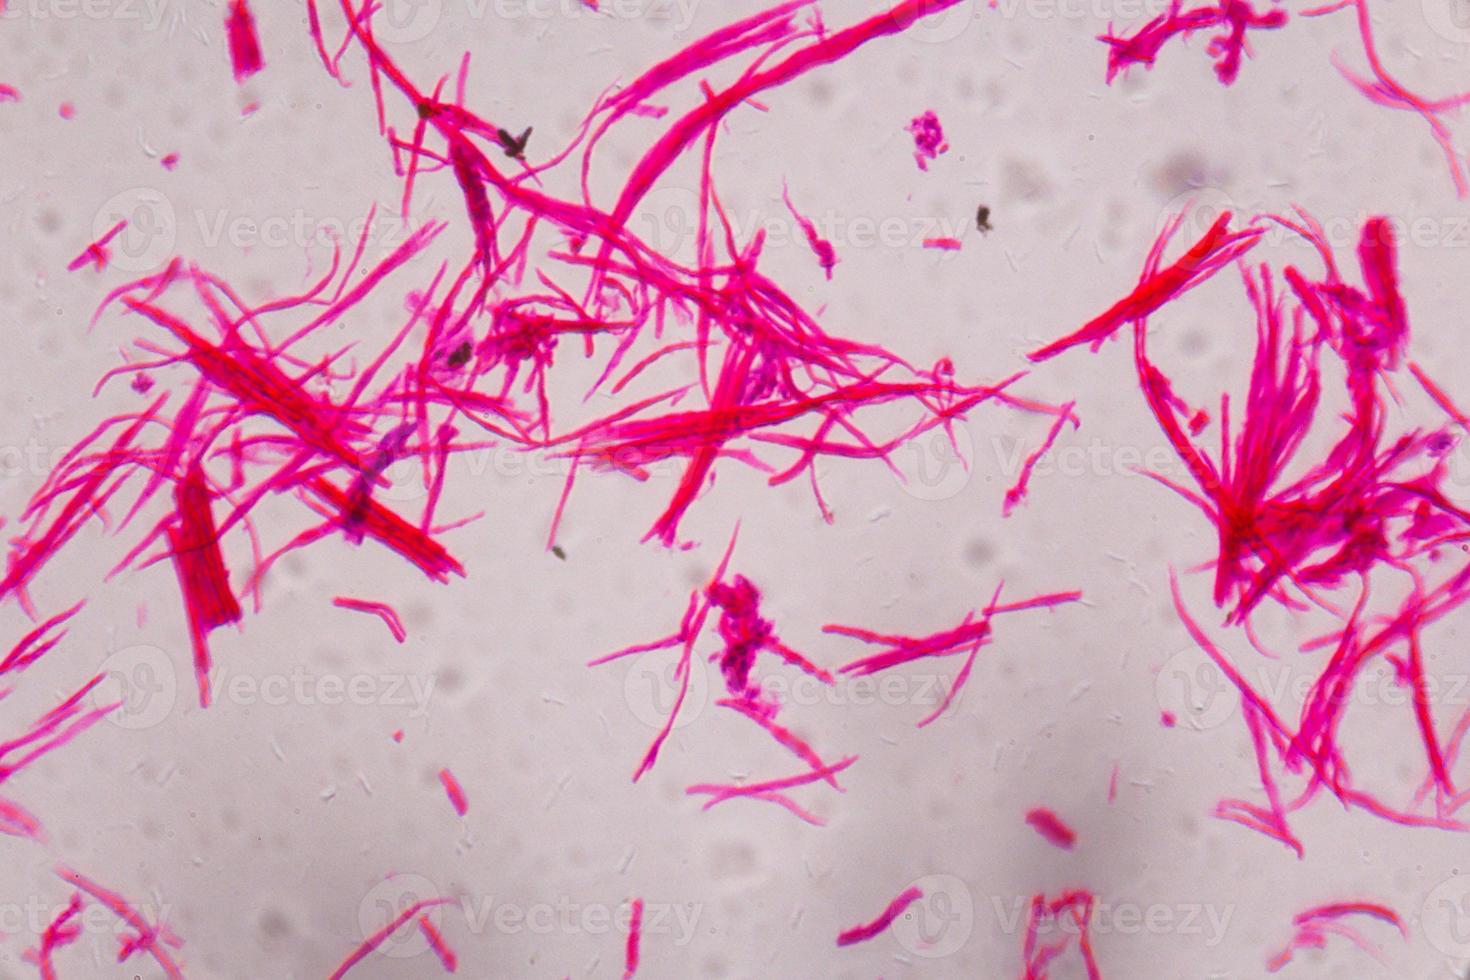 gladde spieren gescheiden onder de microscoop - abstracte roze lijnen op een witte achtergrond foto